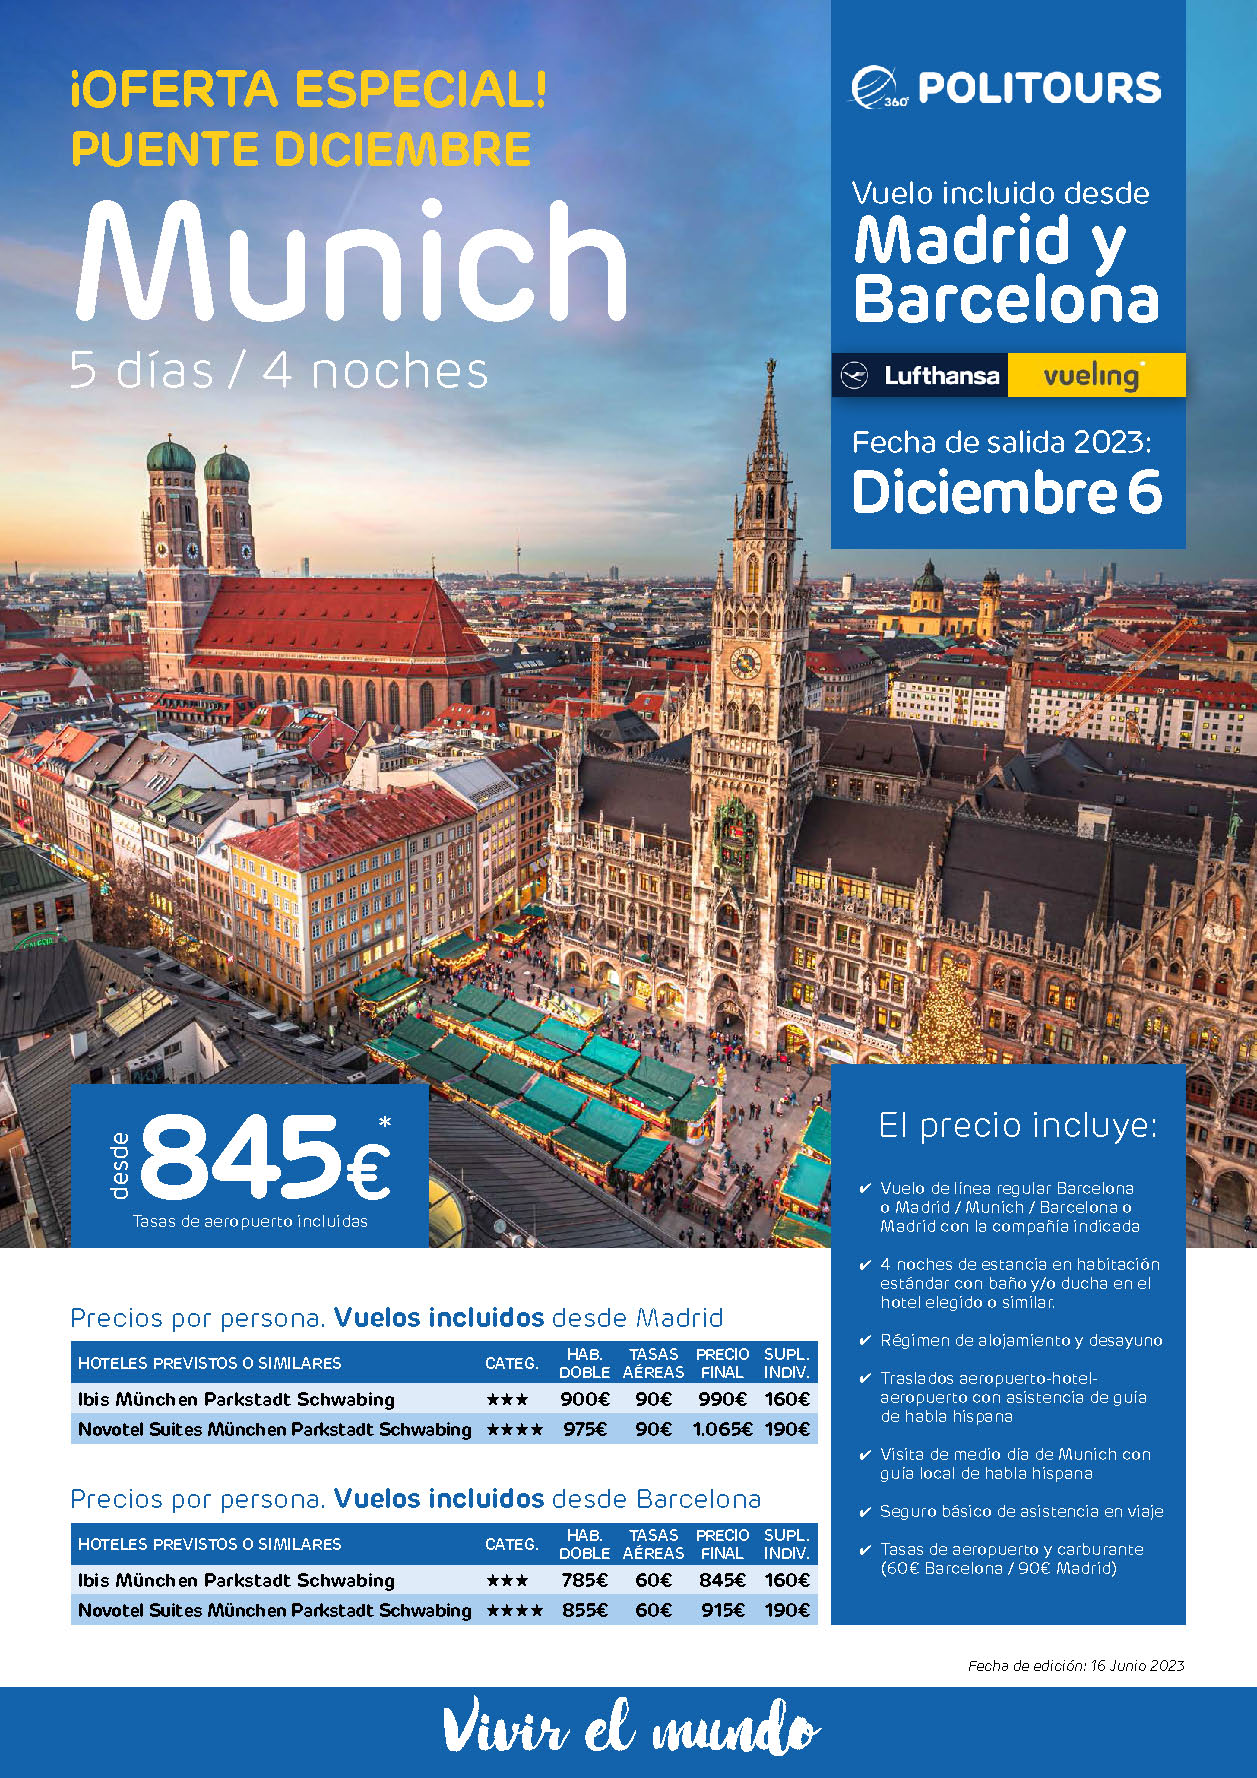 Oferta Politours Puente de Diciembre 2023 Estancia en Munich 5 dias salida 6 diciembre en vuelo directo desde Madrid y Barcelona